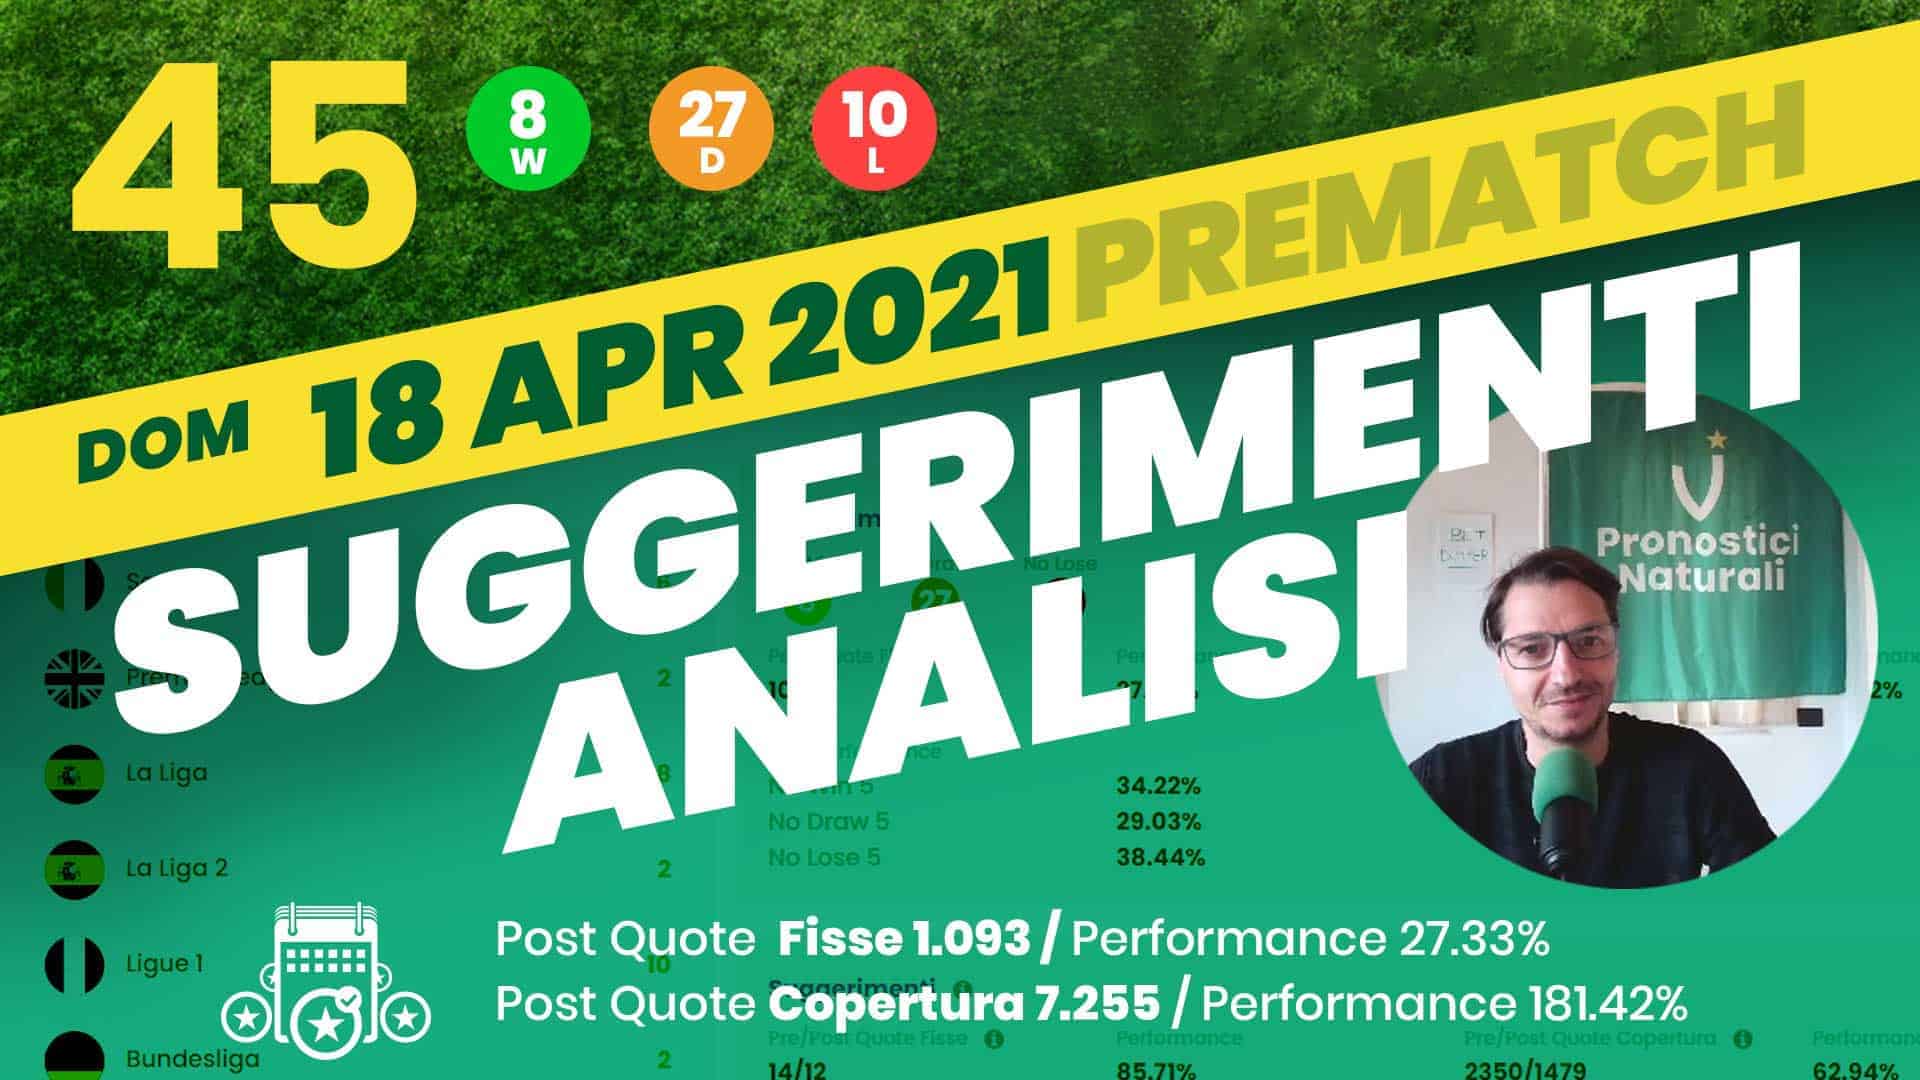 Pronostici Naturali Video Analisi Scommesse Betting Calcio Analisi Pre Partite Domenica 18 Aprile 2021